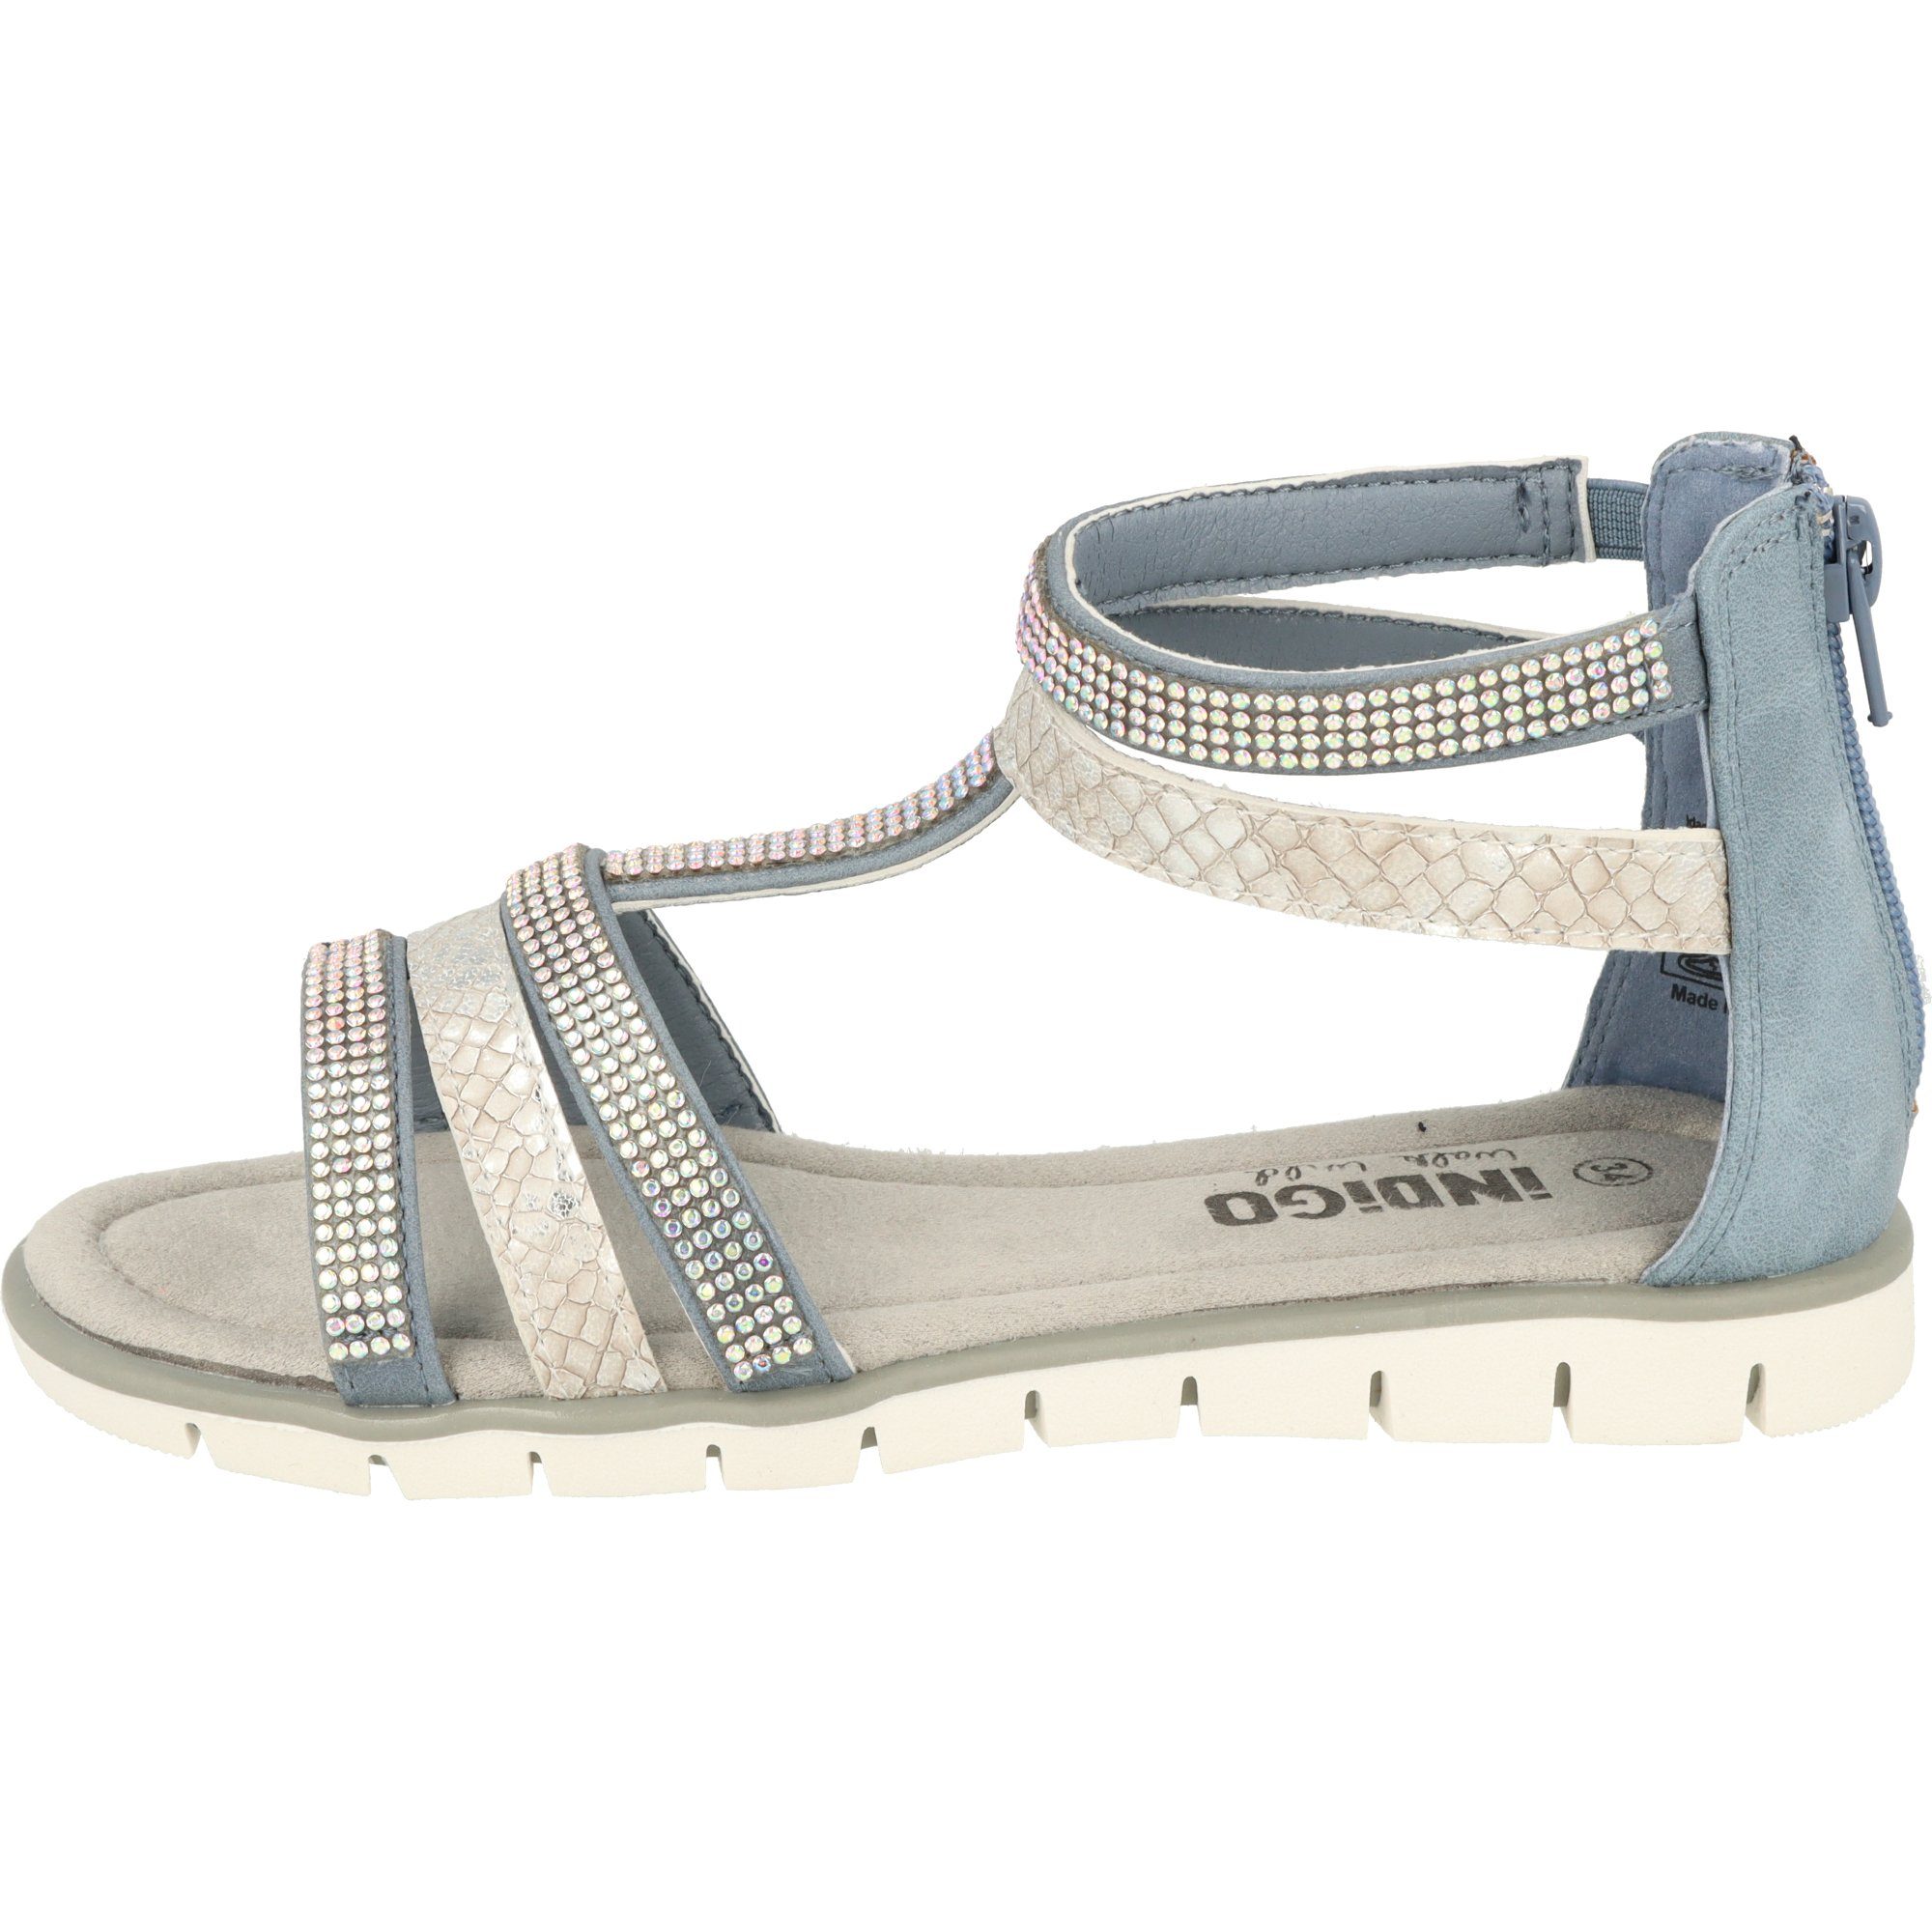 Indigo Mädchen Schuhe 482-380 Sandale mit Glitzersteinen Römersandale Blue Sommer